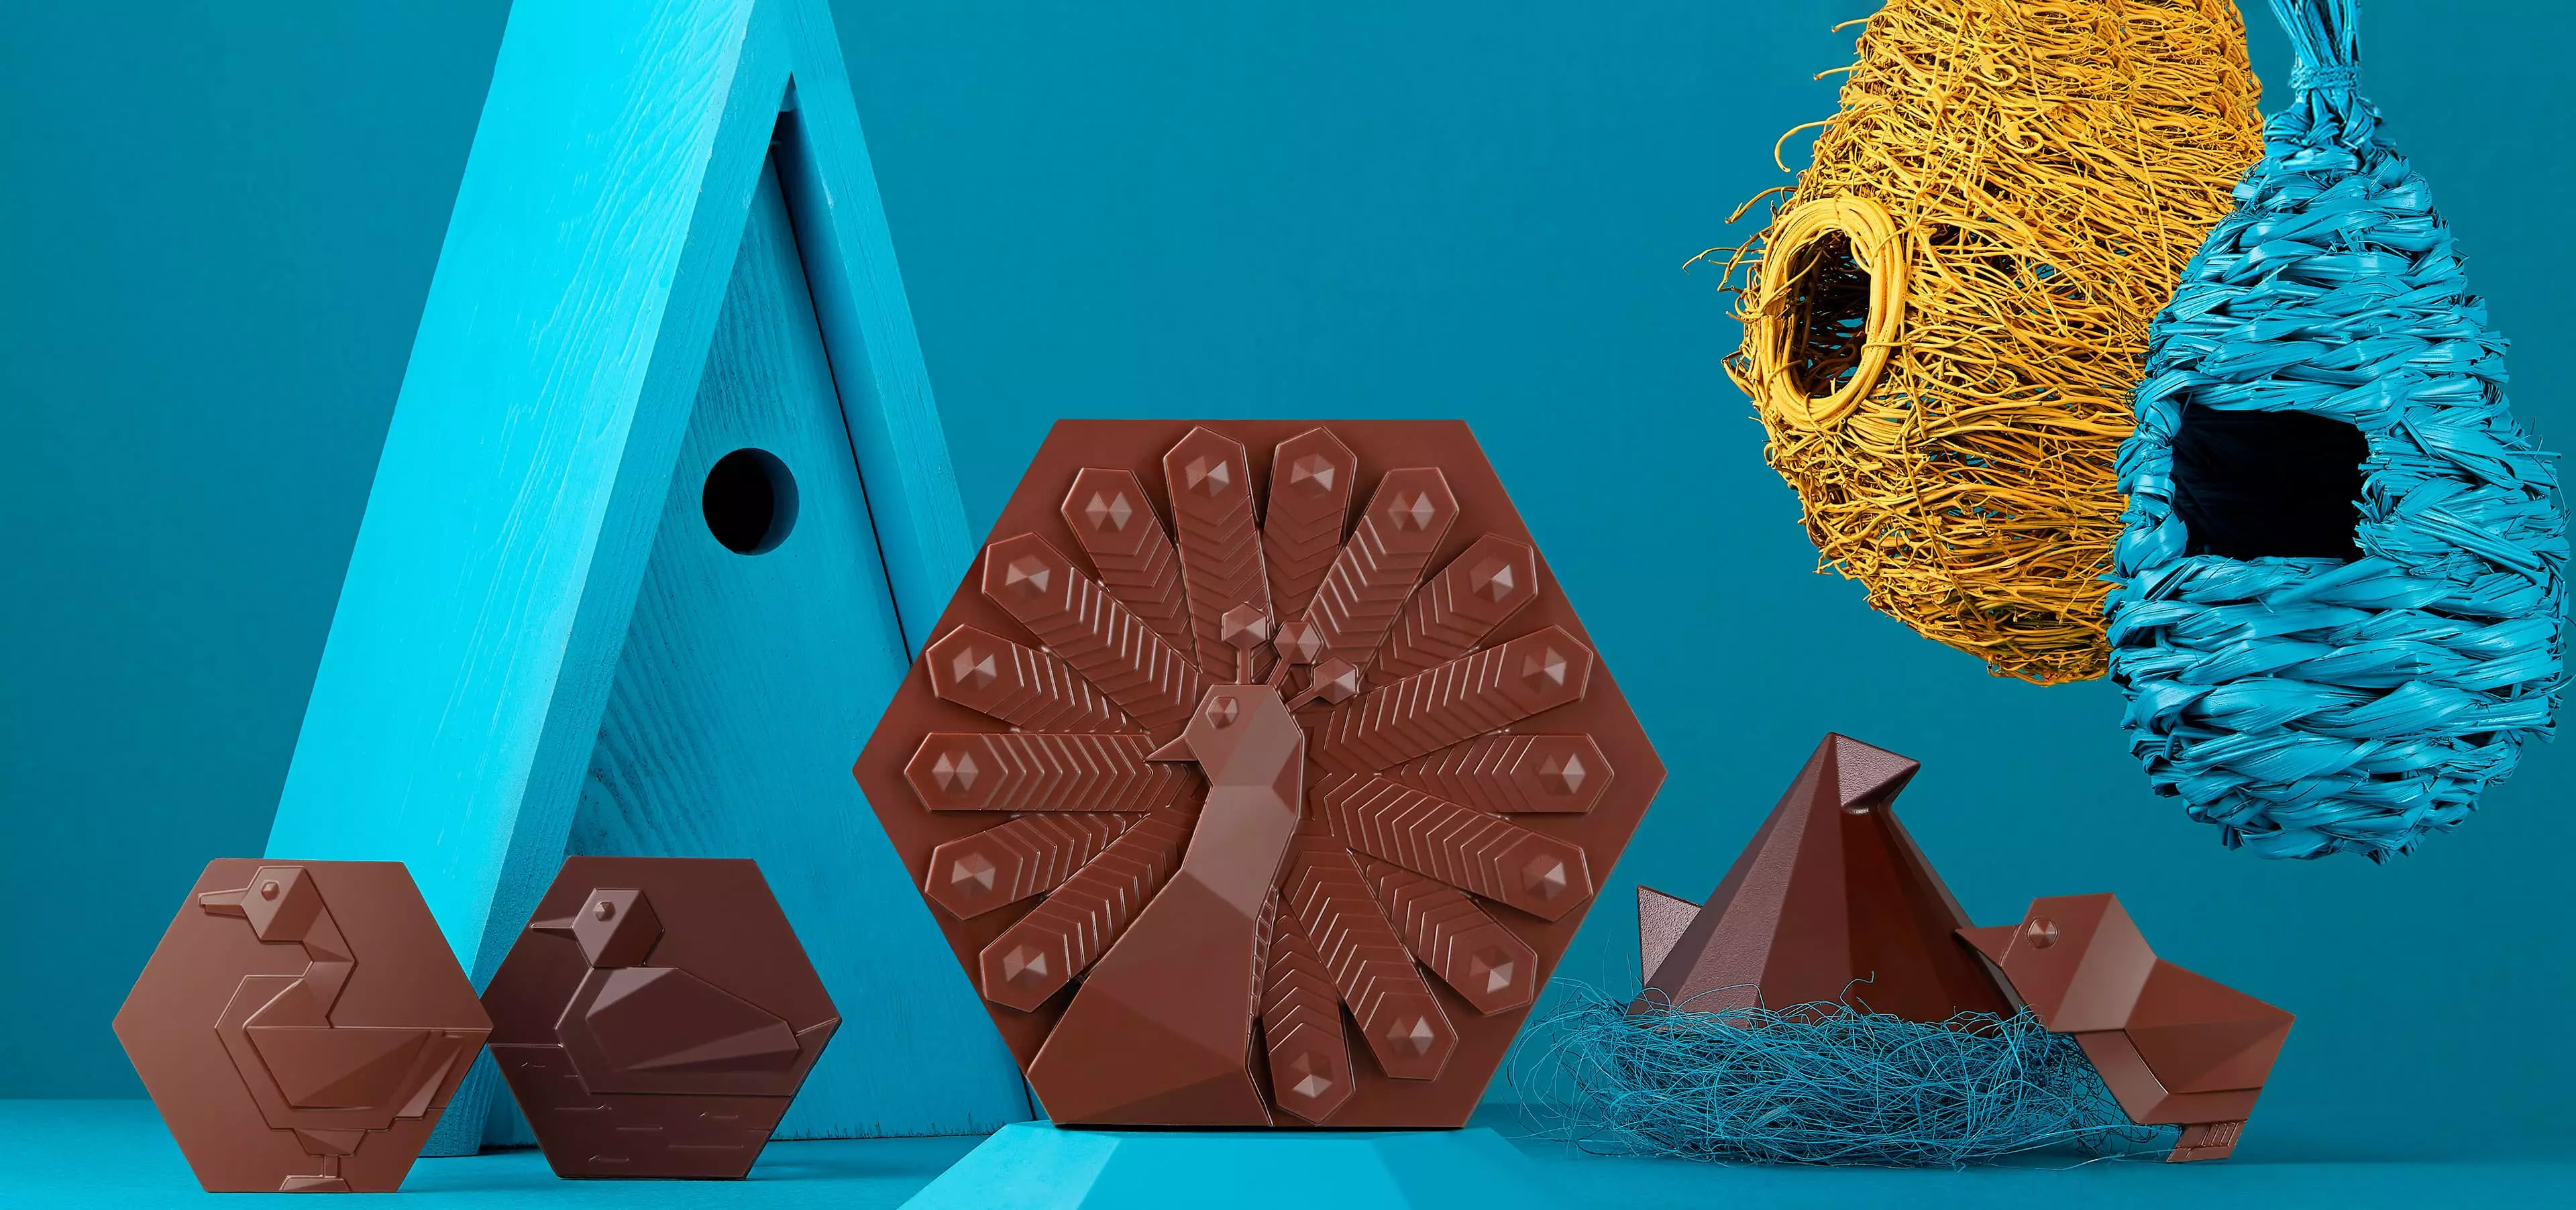 Succombez aux créations inédites de la Manufacture de Chocolat pour Pâques. Cette année, de somptueux oiseaux ont fait leur nids et y ont déposer de savoureuses surprises chocolatées ! 